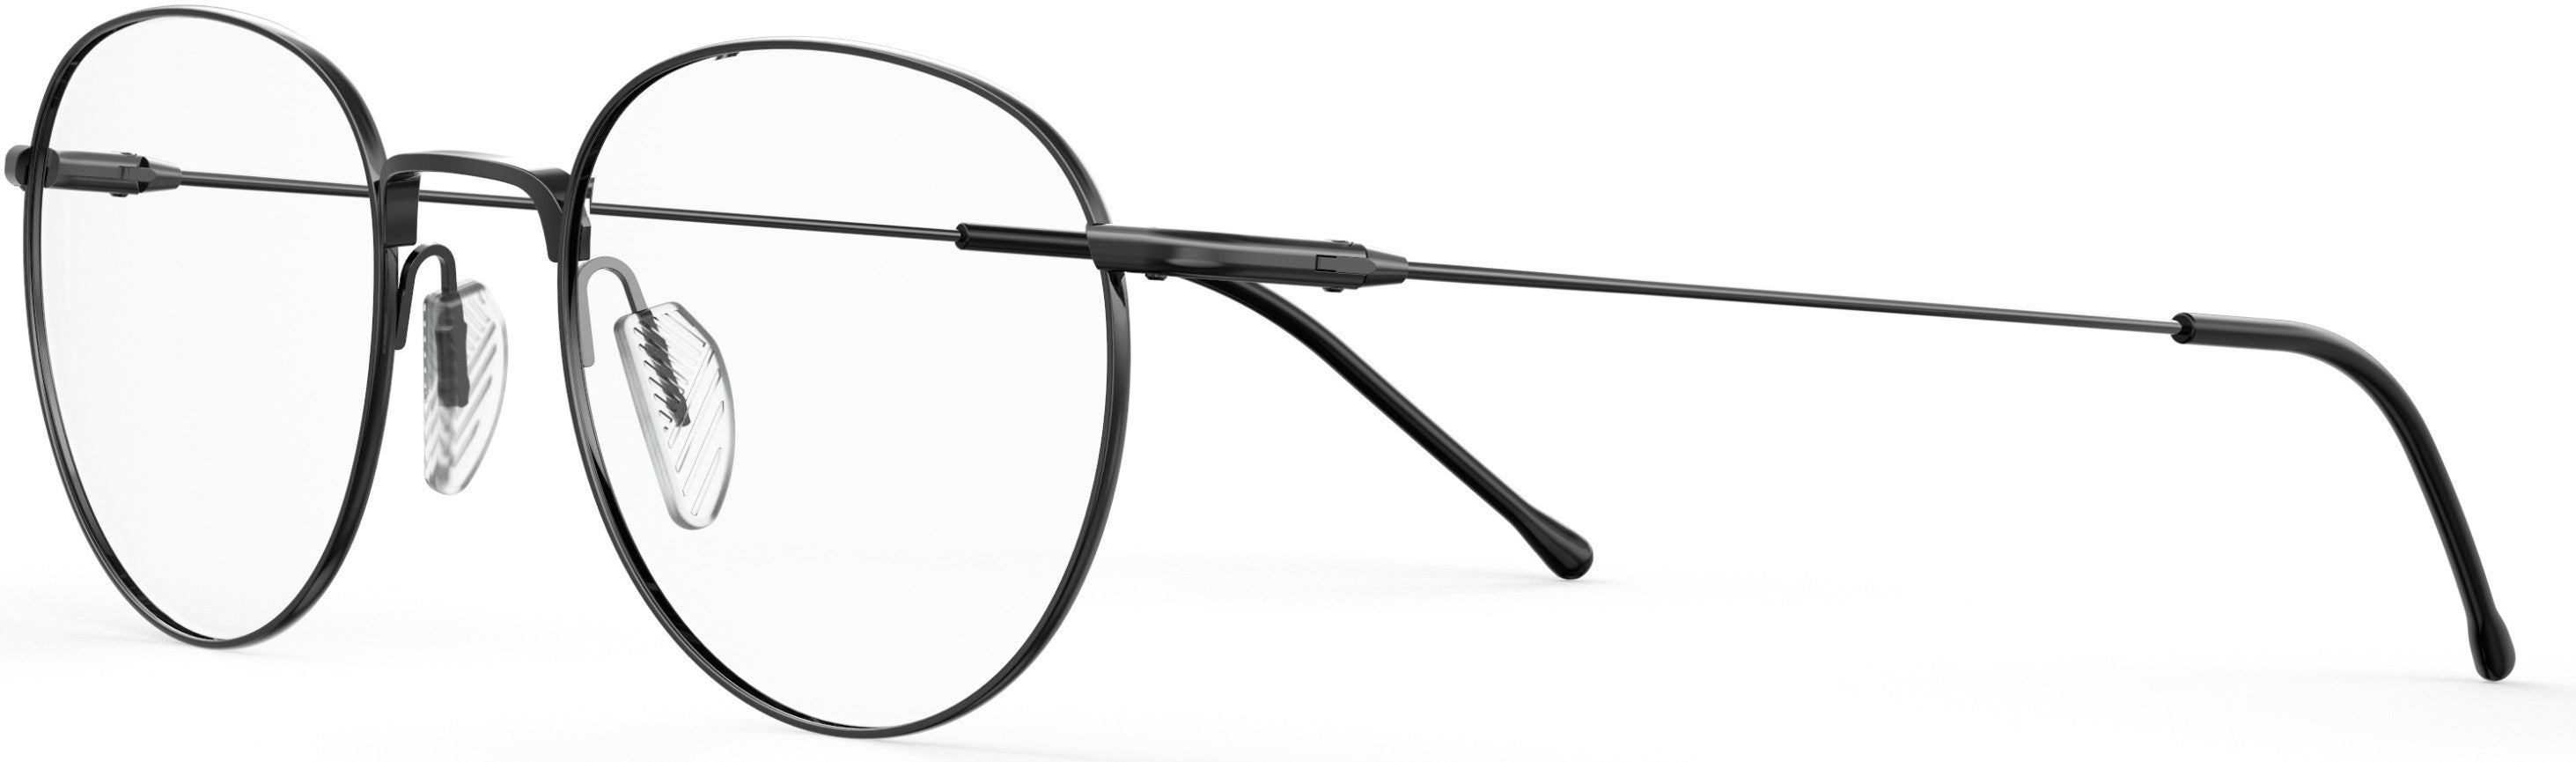 Safilo 2.0 Linea 05 Oval Modified Eyeglasses 0V81-0V81  Dark Ruthenium Black (00 Demo Lens)